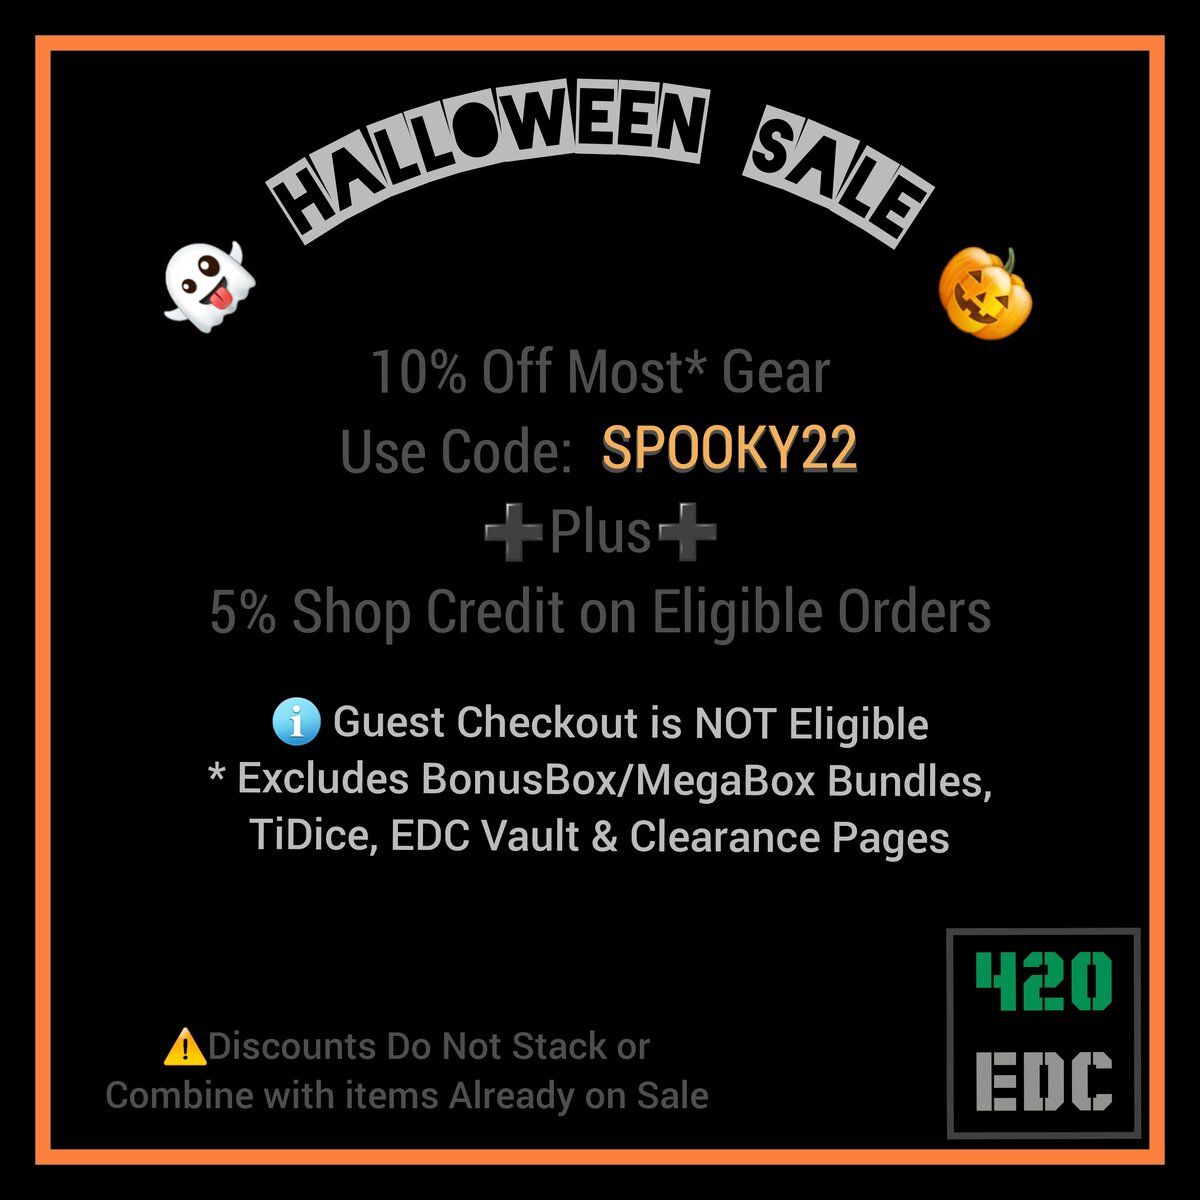 420EDC-Halloween-2022-Sale.jpg